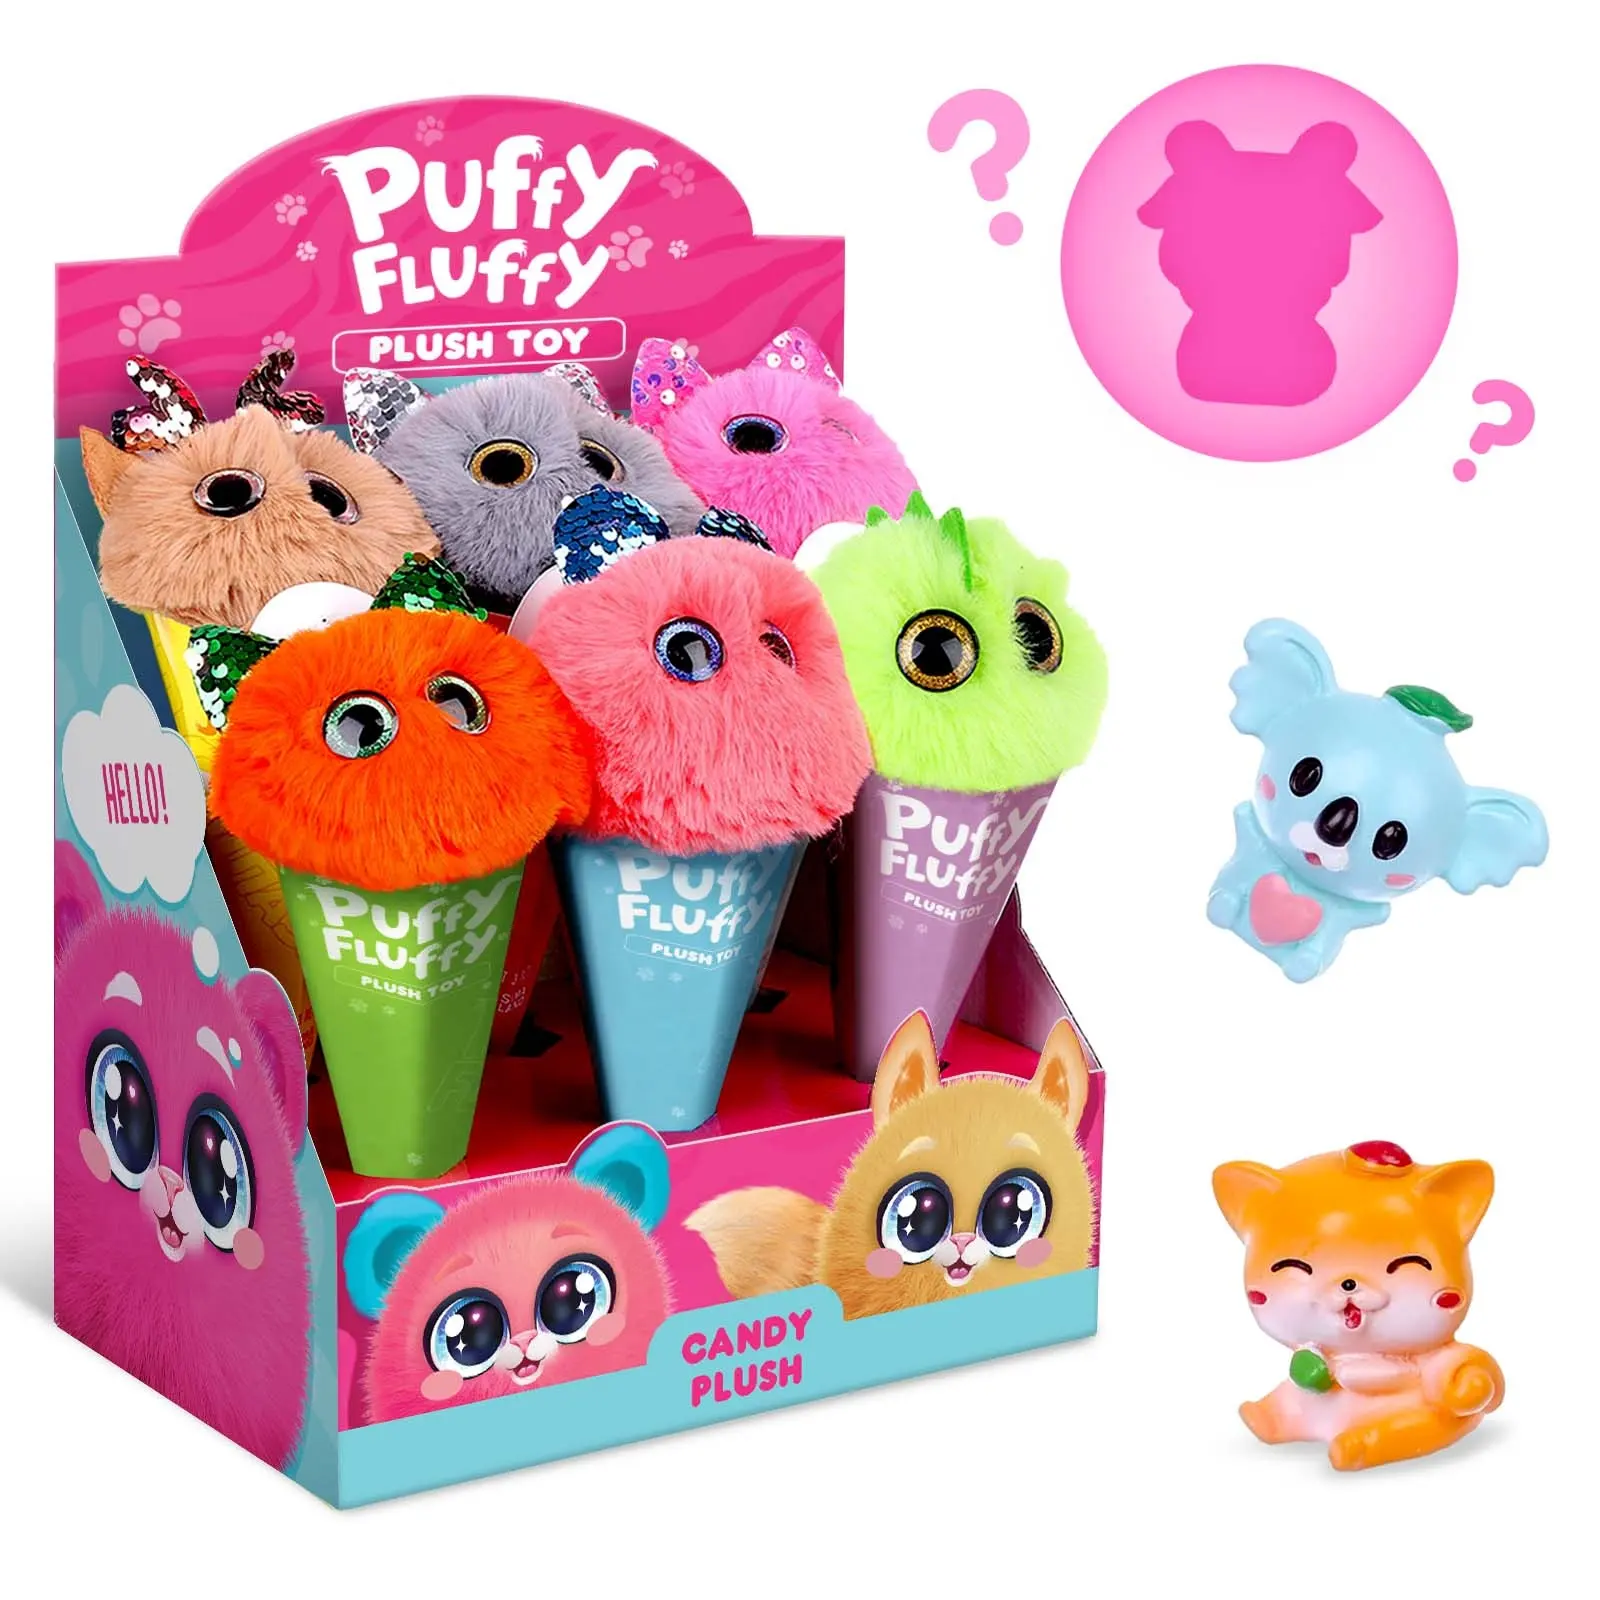 Puffy esponjoso Showbox mascotas 6PCs juguetes Niños Aficiones Juguetes clásicos Venta al por mayor Niños Juguete divertido para niños Imagen Tipo de color